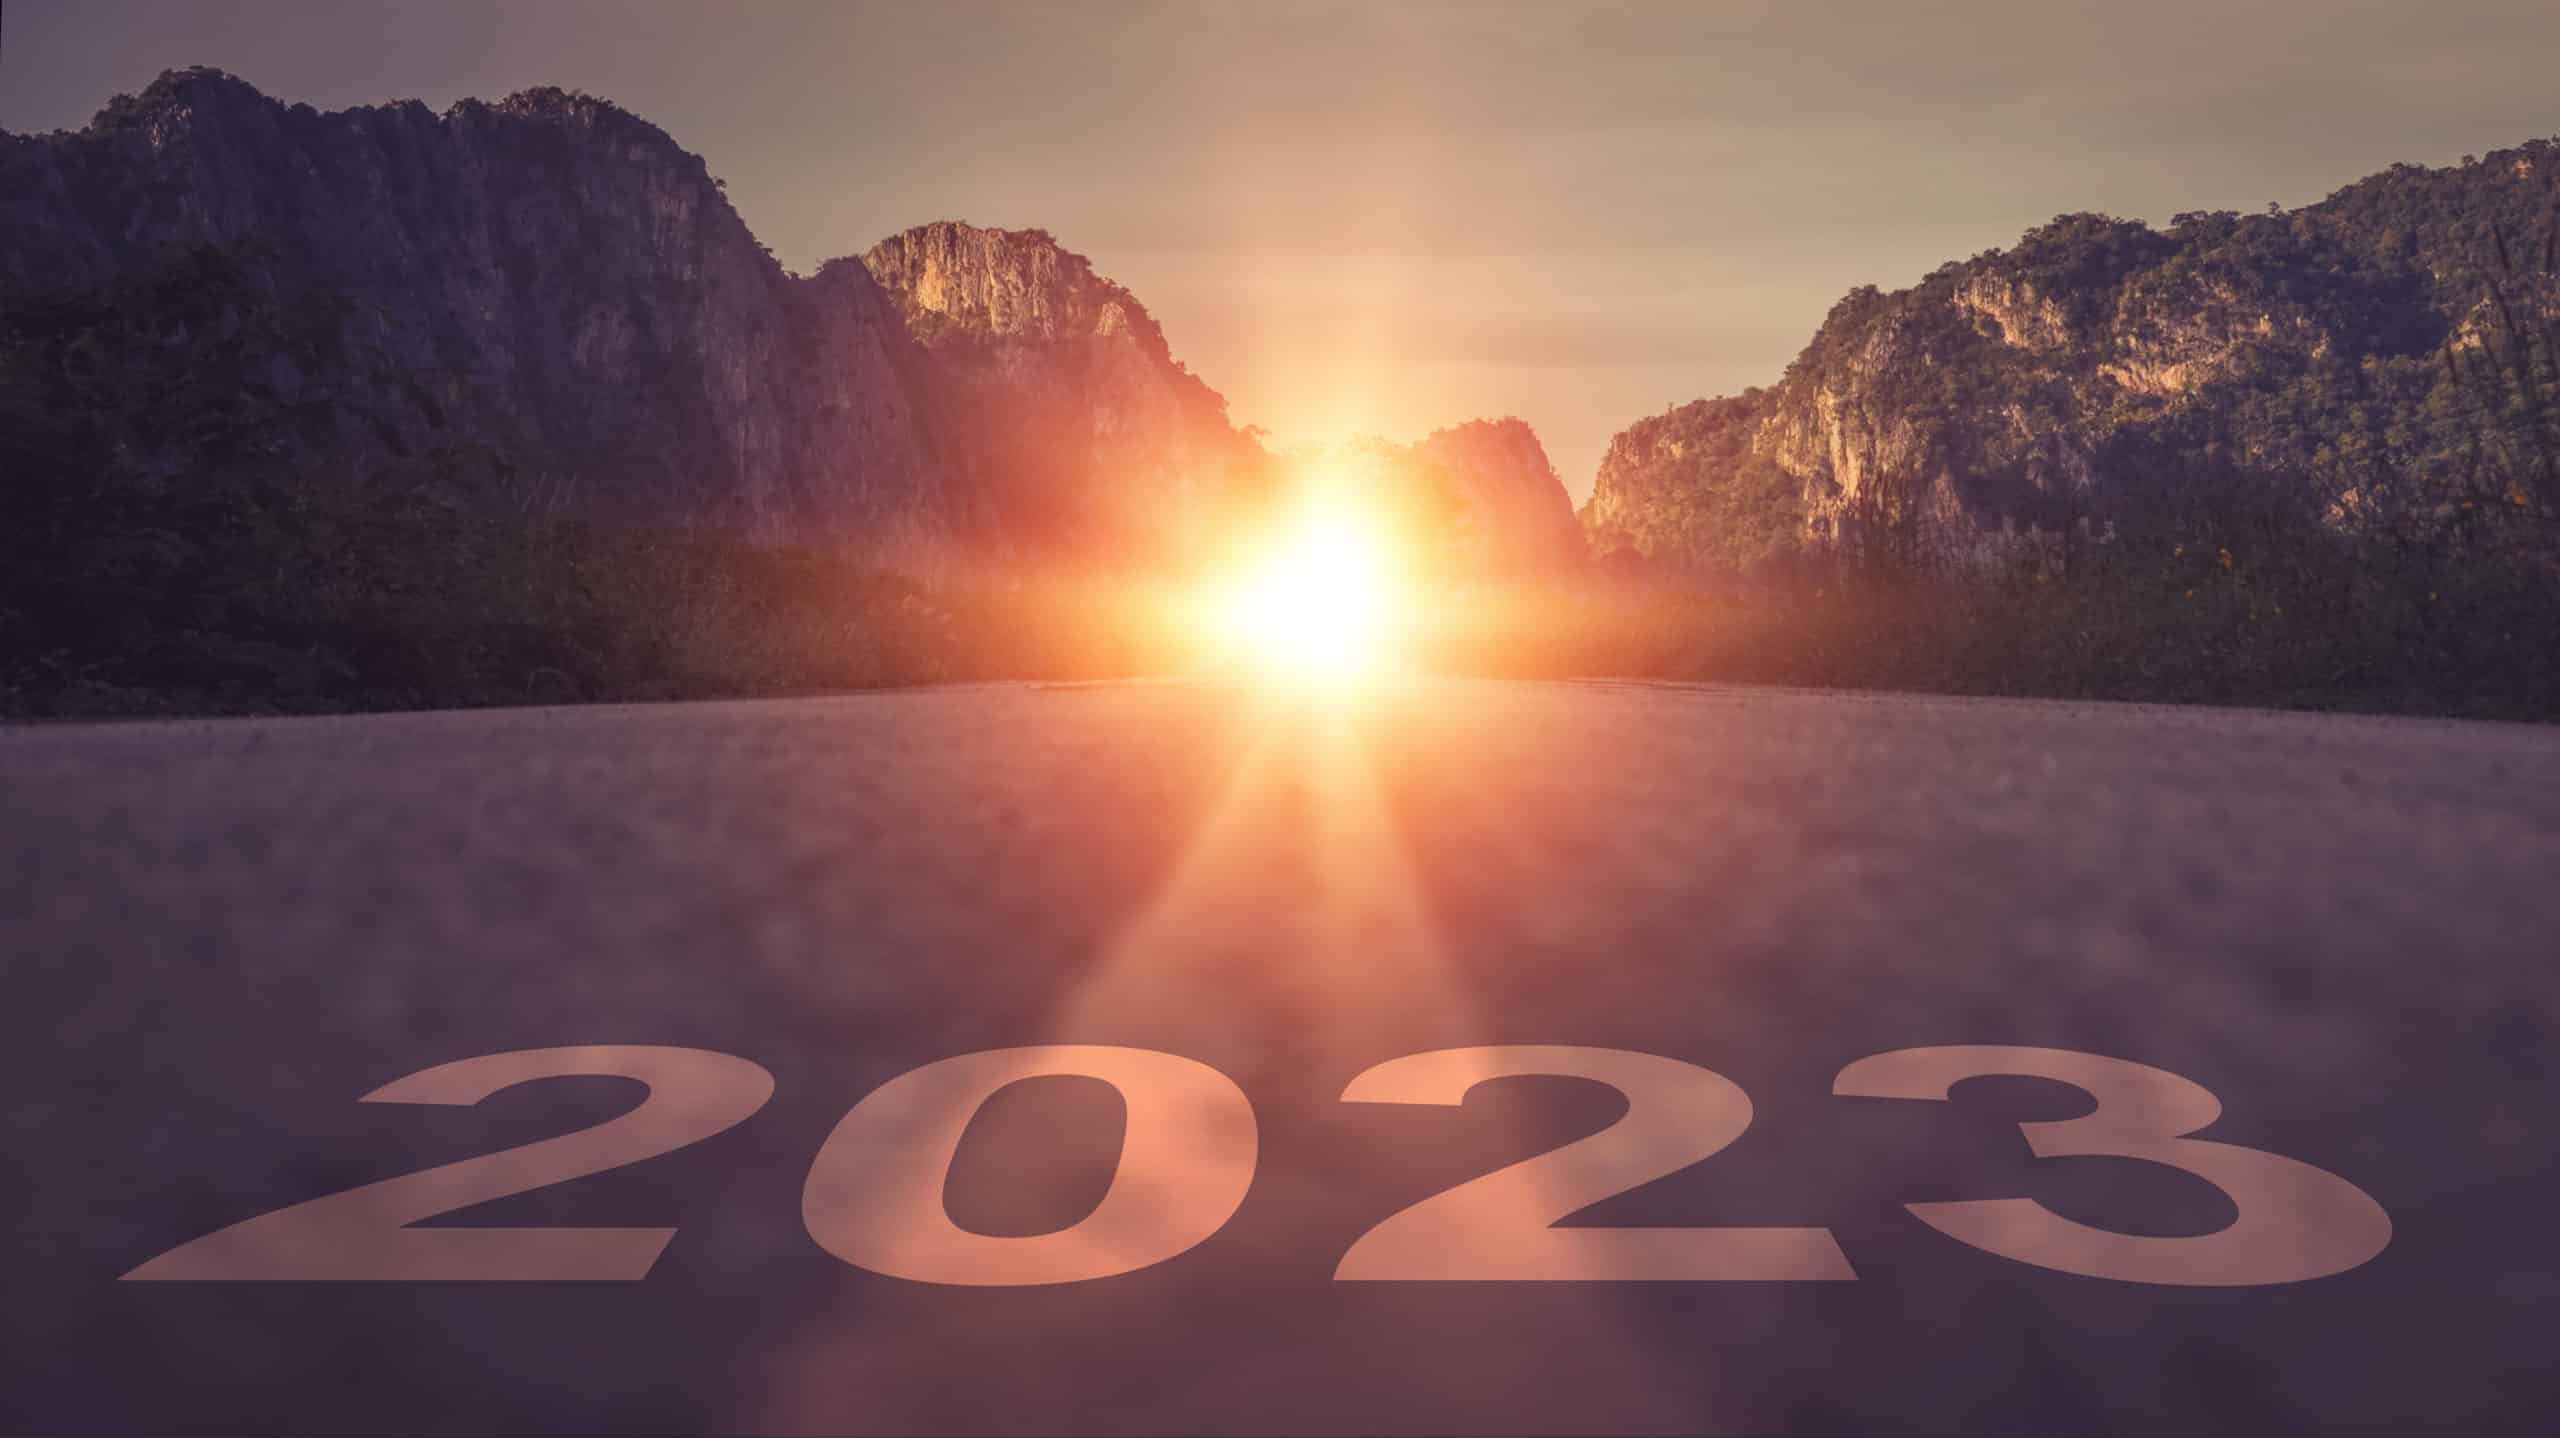 2023 written on asphalt road for new year at sunrise